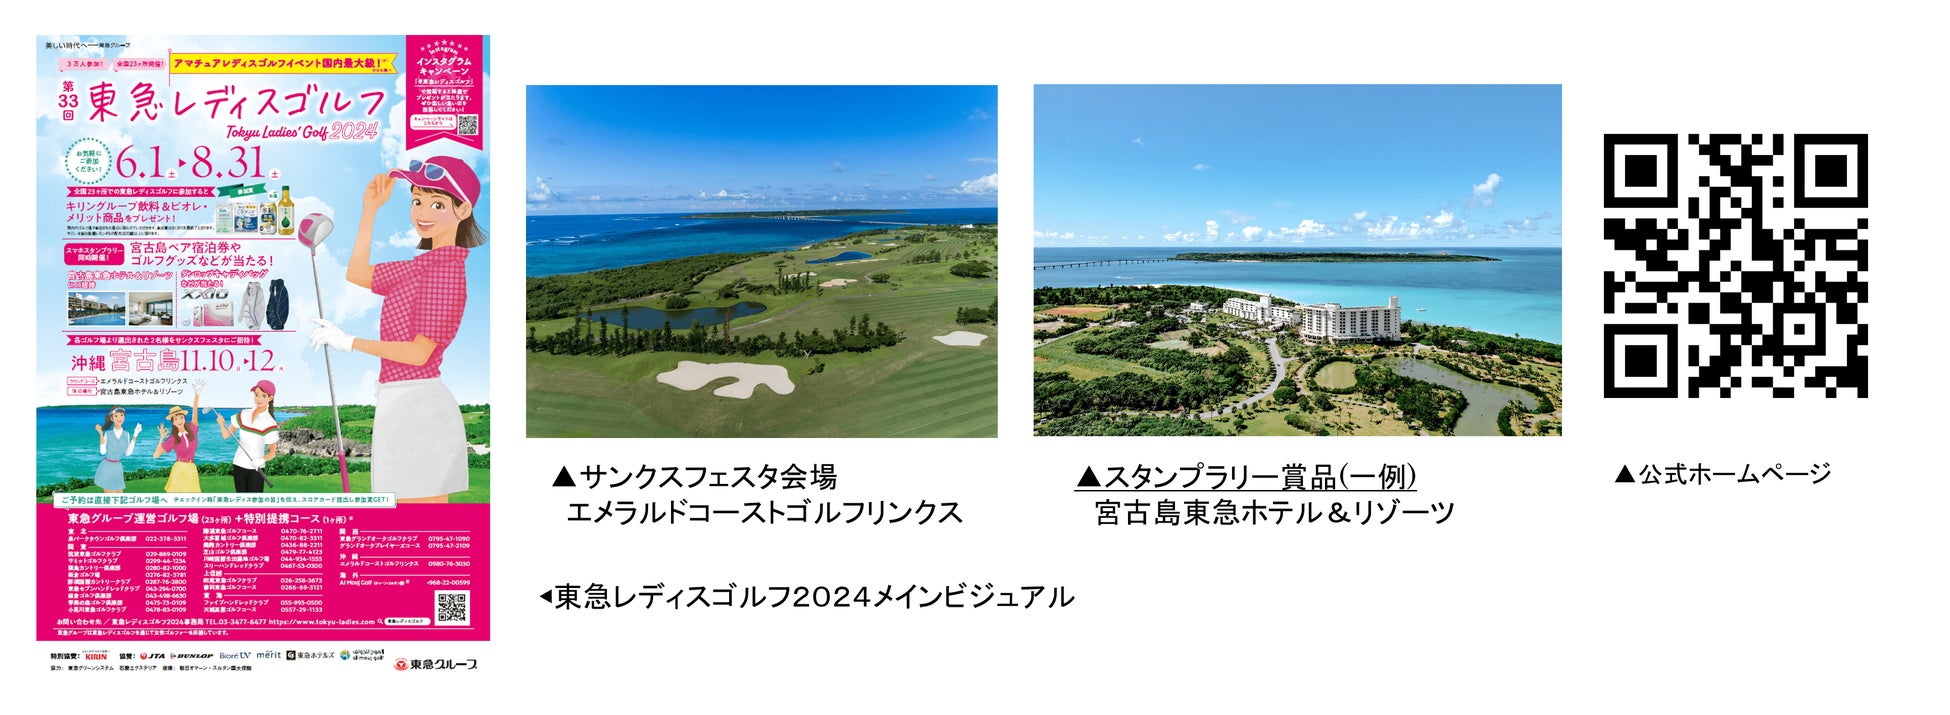 松山英樹、渋野日向子ら日本人トッププレイヤーが多数出場！「第152回全英オープンゴルフ選手権」「第48回AIG全英女子オープンゴルフ選手権」をゴルフネットワークで全ラウンド生中継